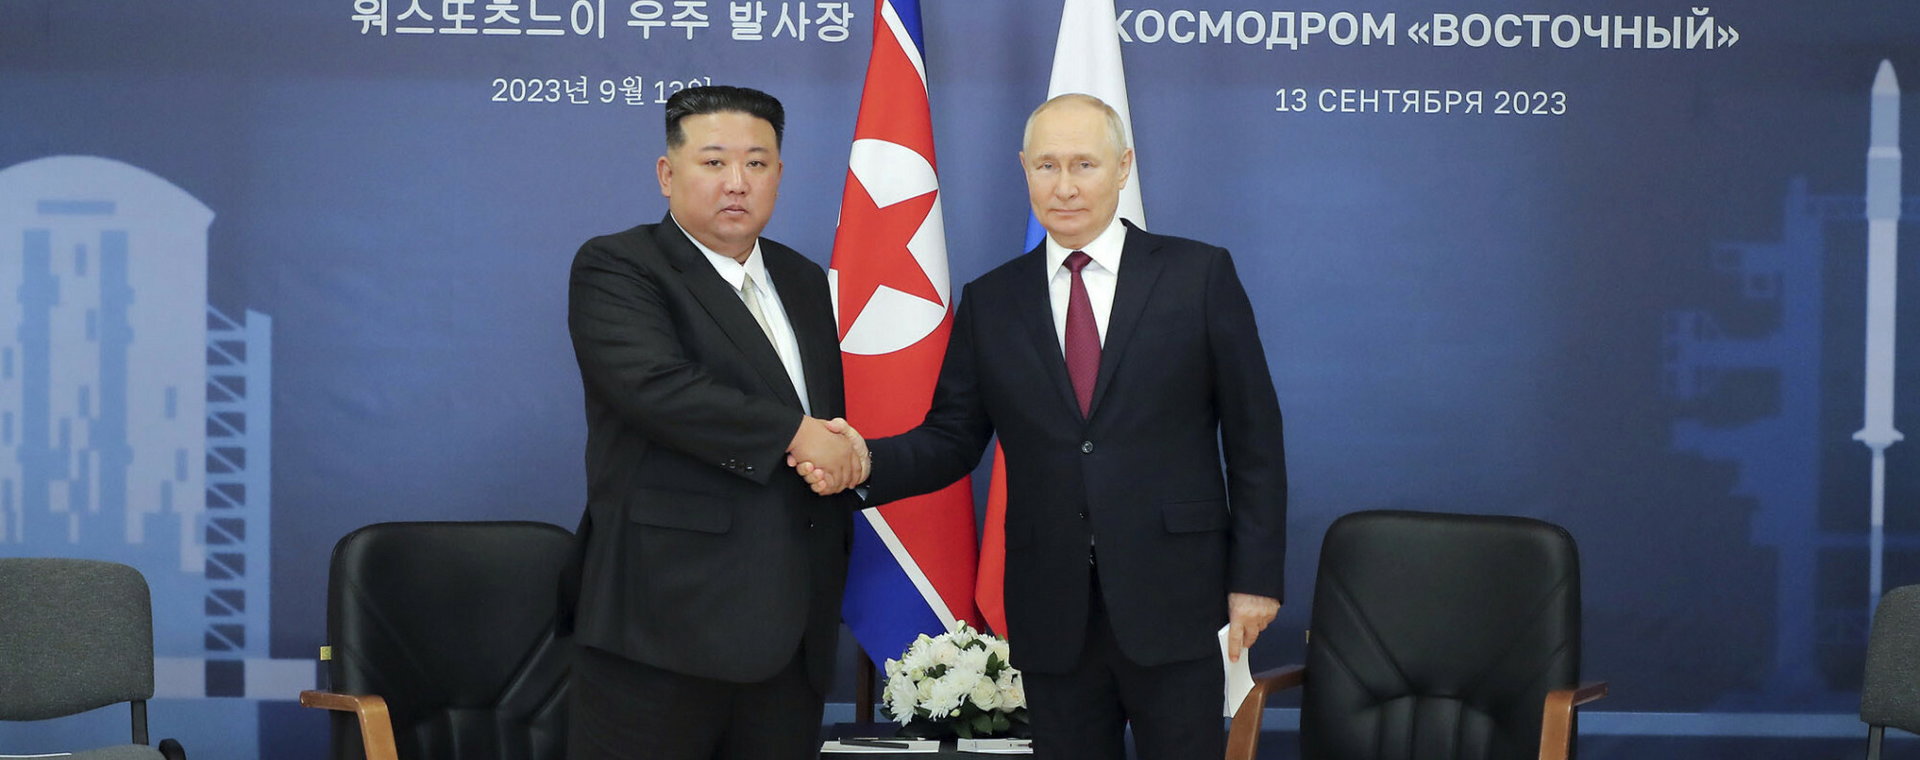 Spotkanie Kim Dzong Una z Władimirem Putinem